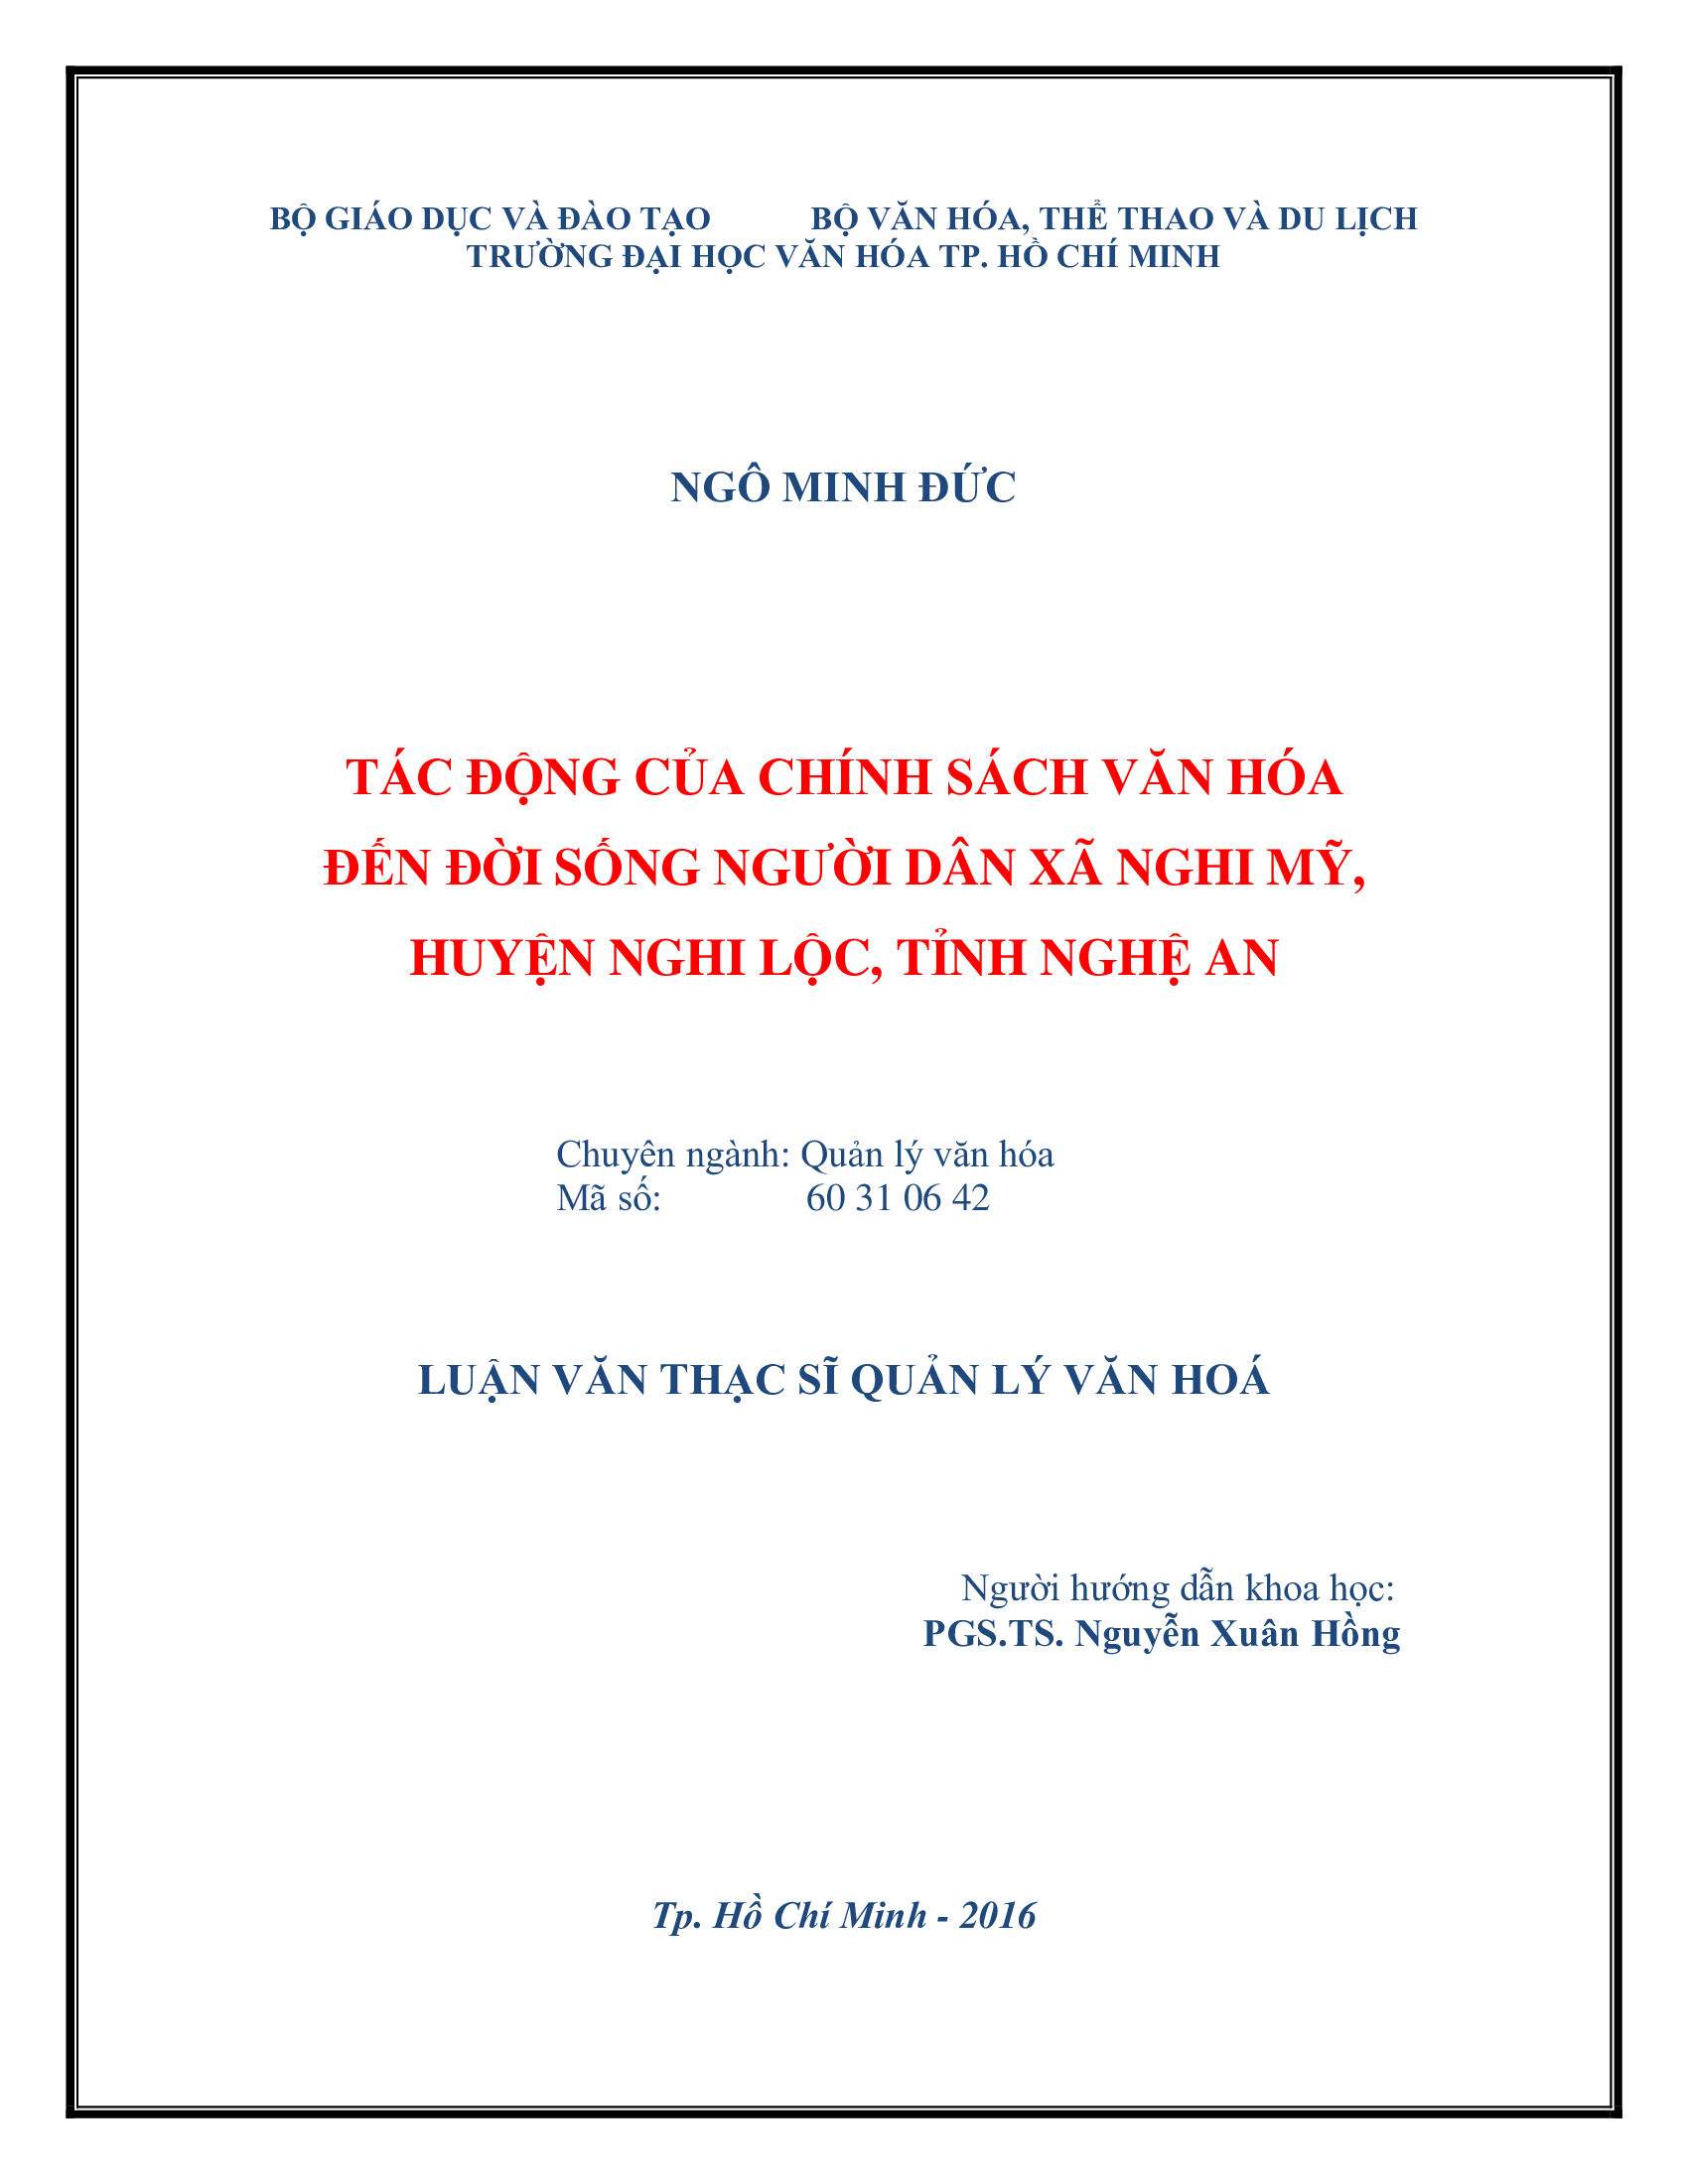 Tác động của chính sách văn hóa đến đời sống người dân Xã Nghi Mỹ, Huyện Nghi Lộc, Tỉnh Nghệ An